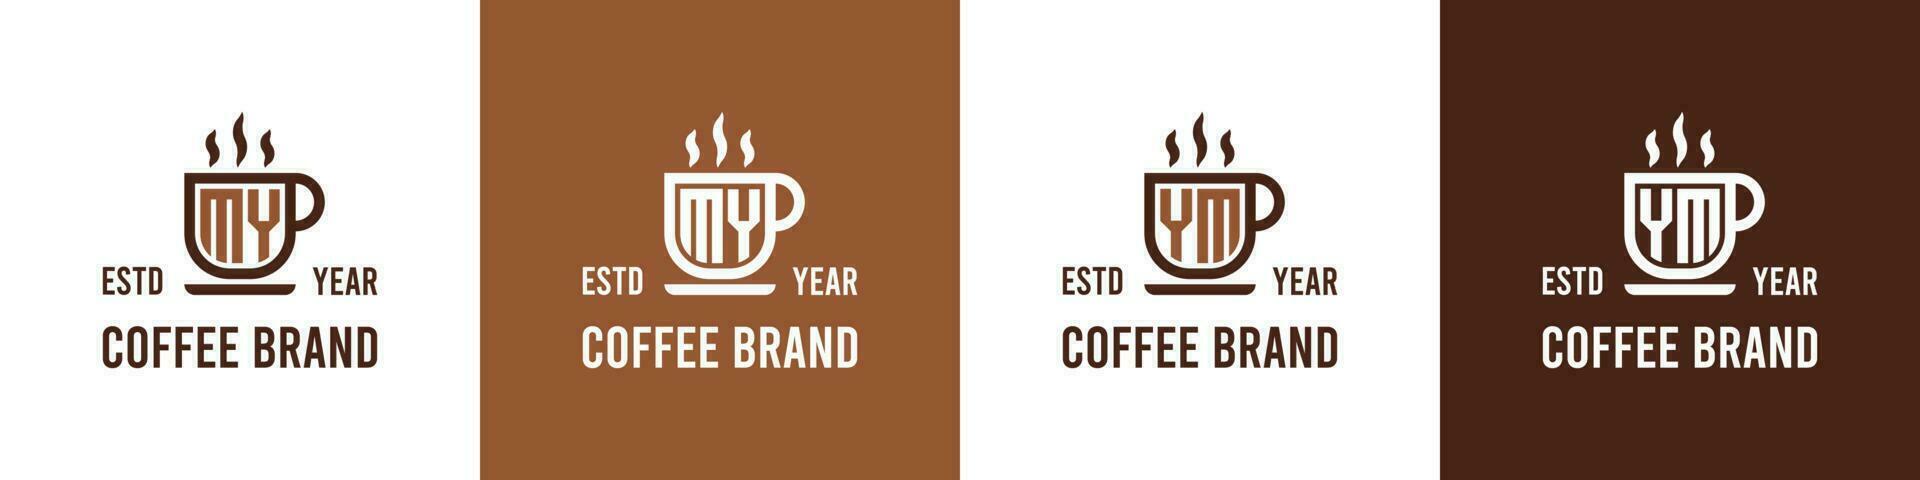 letra mi y ym café logo, adecuado para ninguna negocio relacionado a café, té, o otro con mi o ym iniciales. vector